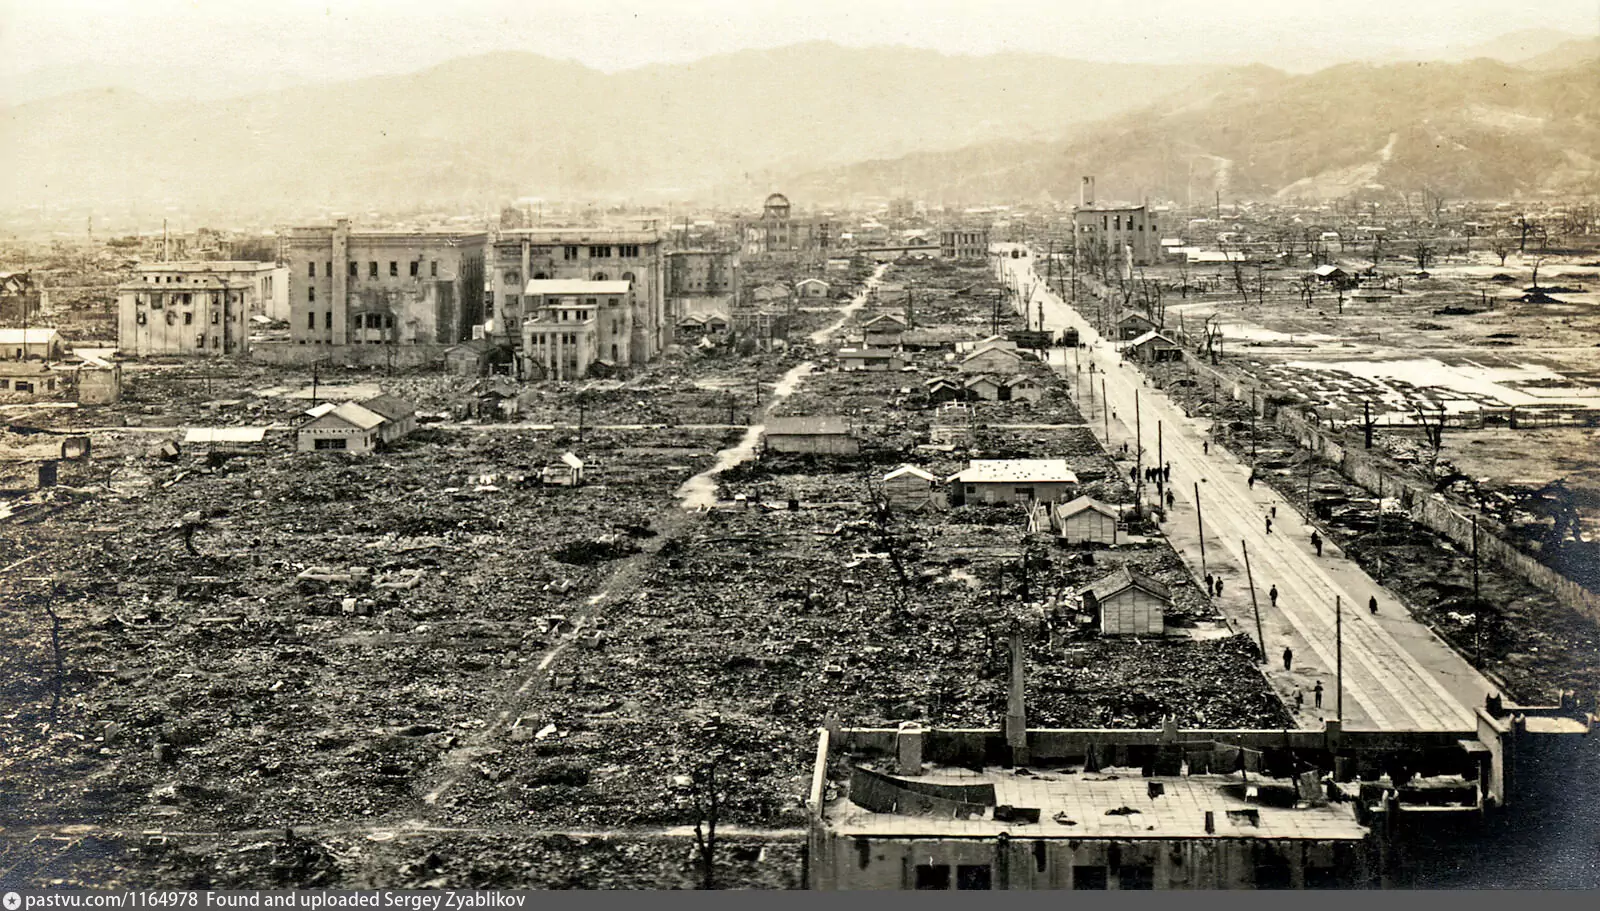 Бомбардировка хиросимы и нагасаки фото. Бомбардировка Хиросимы и Нагасаки. Япония 1945 Хиросима и Нагасаки. Атомные бомбардировки японских городов Хиросимы и Нагасаки.